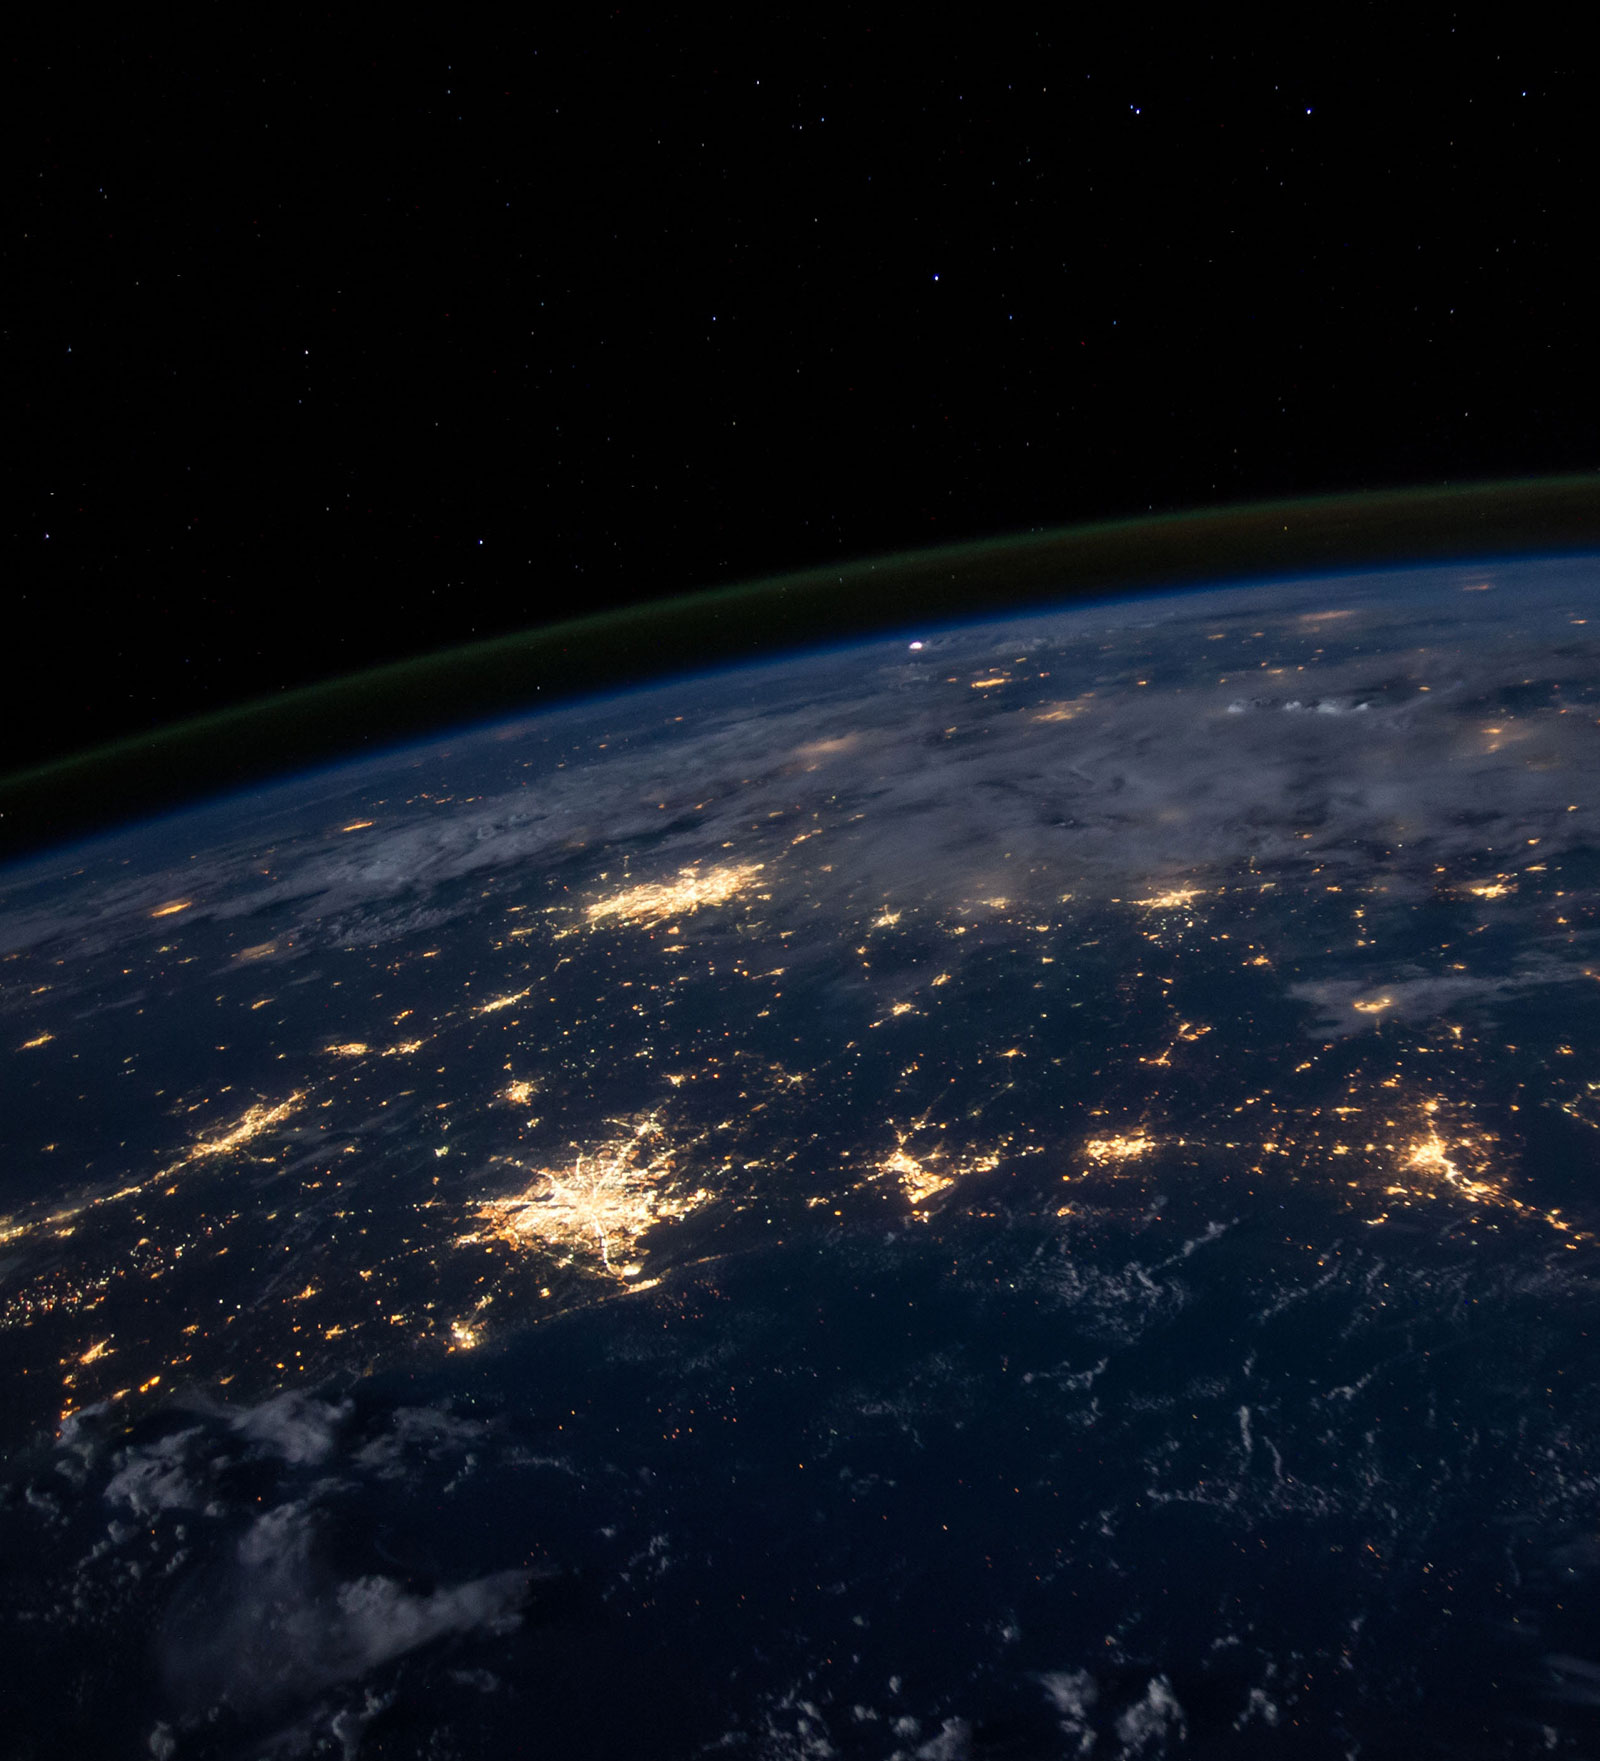 Ansicht der Weltkugel bei Nacht mit sich verbindenden Lichtern zur Darstellung des internationalen Partnernetzwerks von amiea